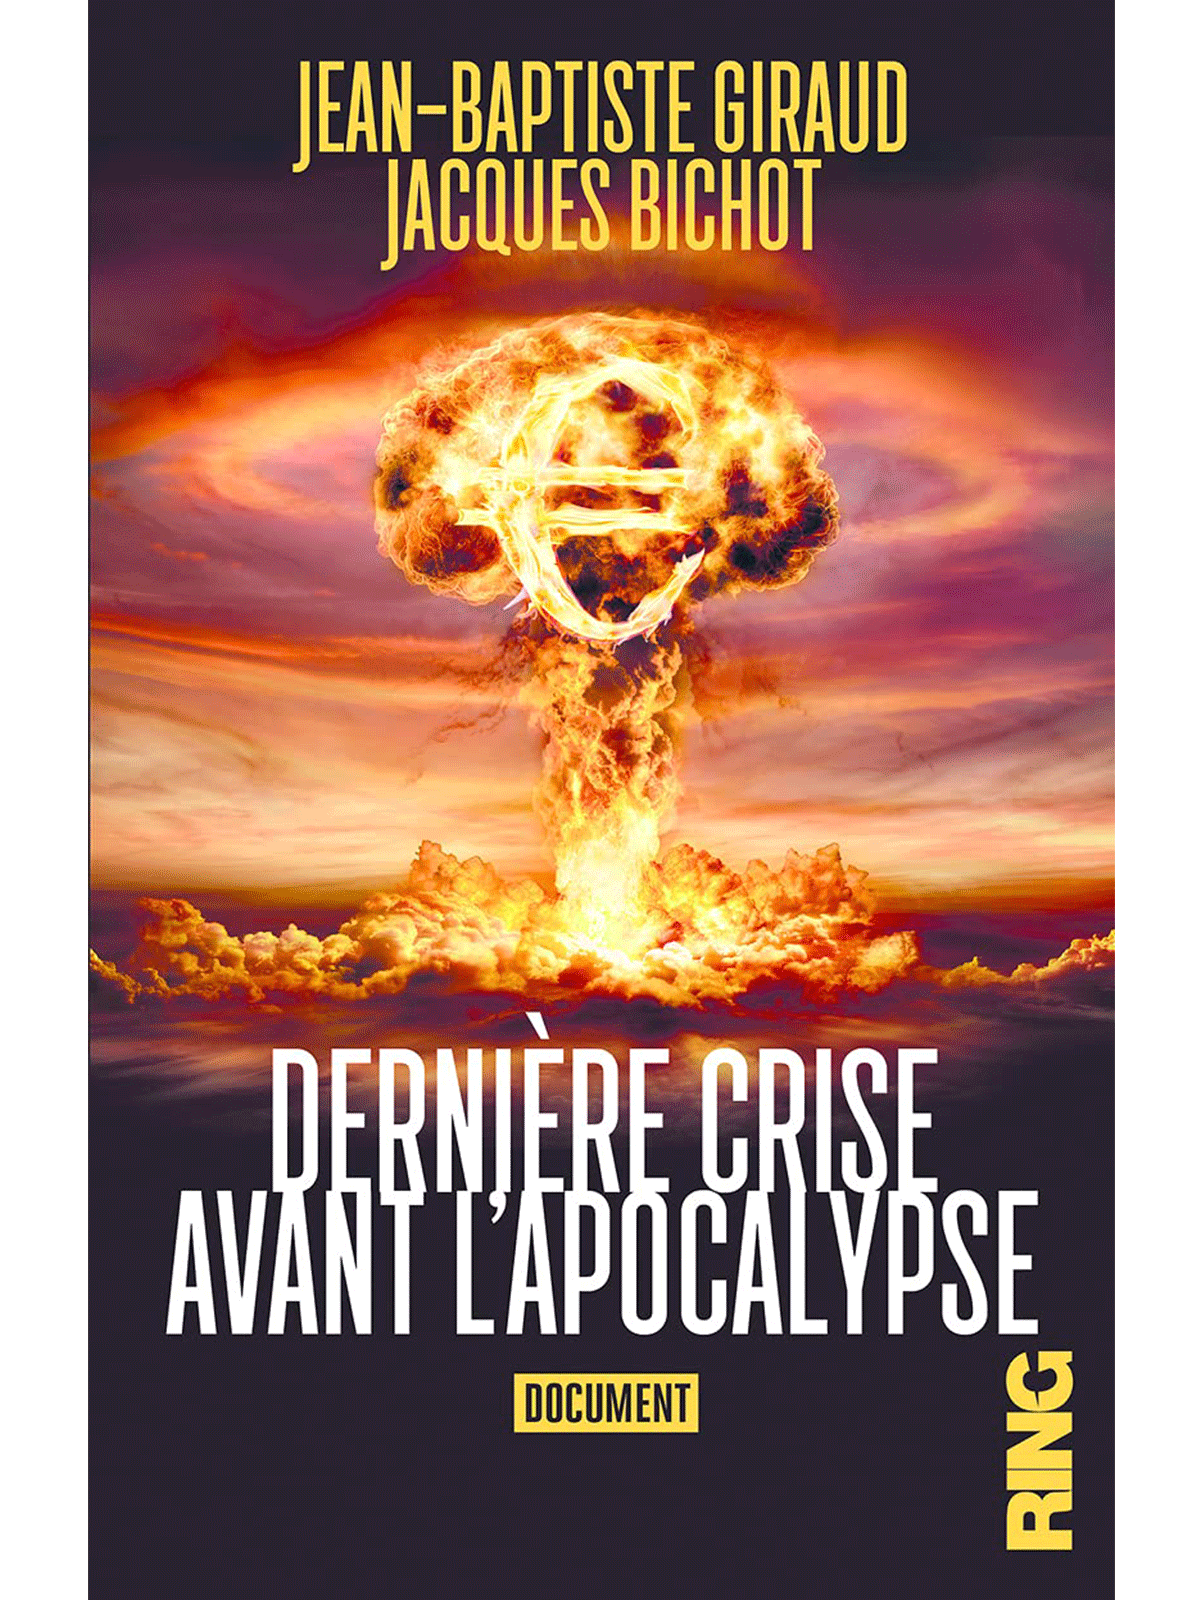 Jean-Baptiste Giraud Jacques Bichot : Dernière crise avant l'apocalypse